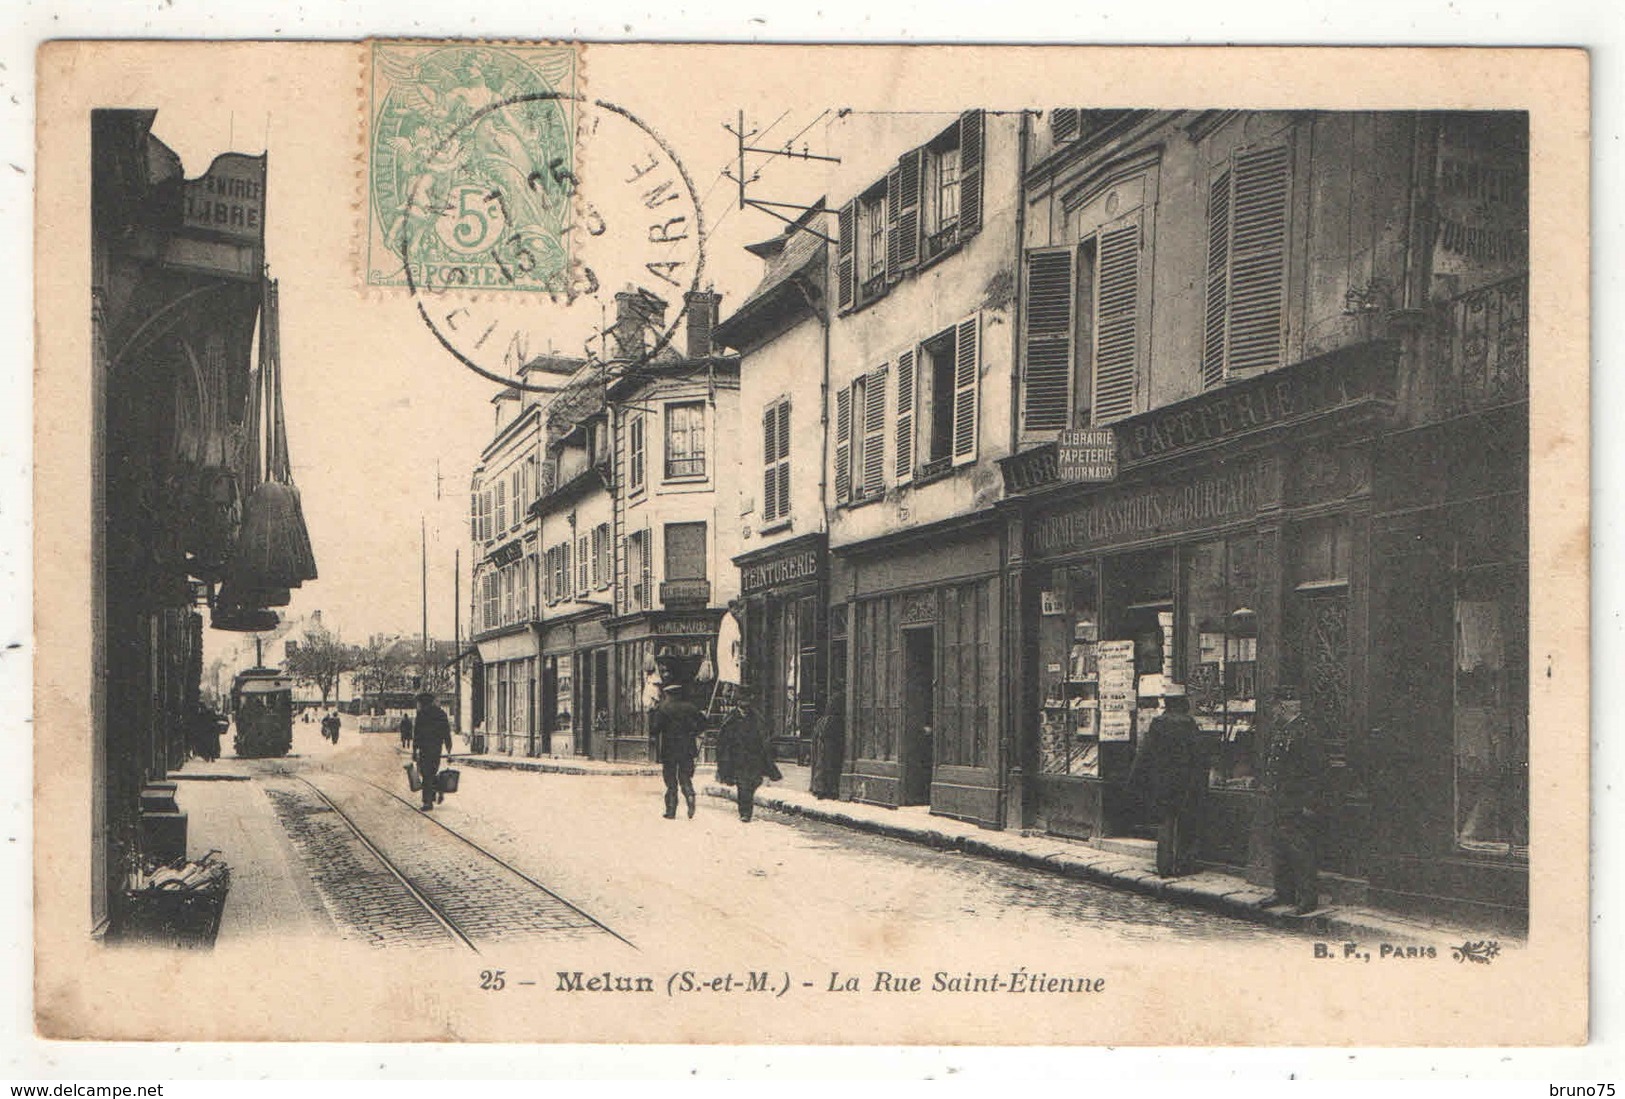 77 - MELUN - La Rue Saint-Etienne - BF 25 - (Tramway) - Melun